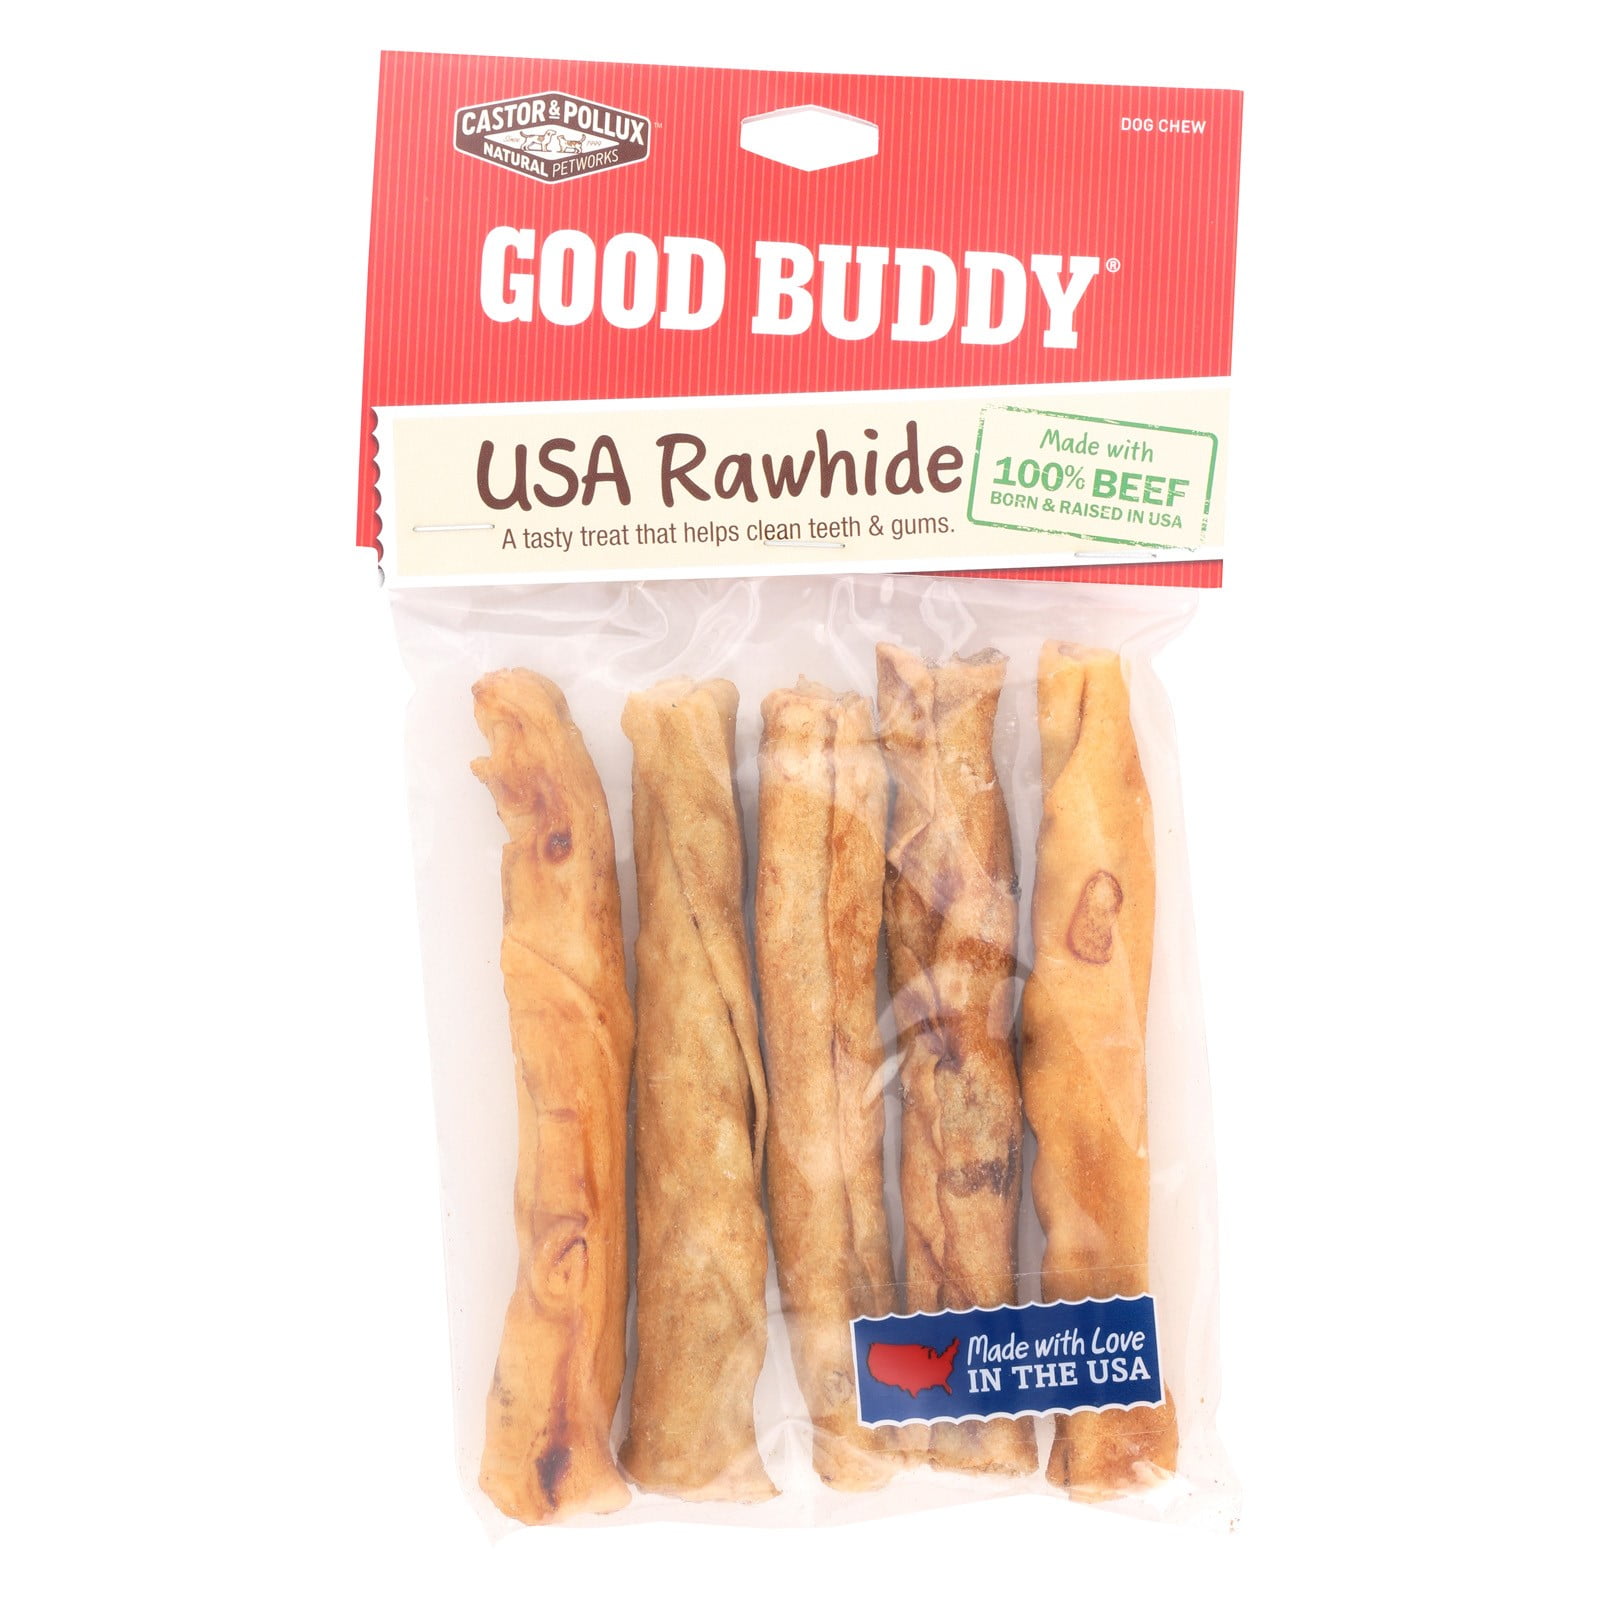 Goody Buddy 5 Usa Rawhide Sticks Contains 5 Sticks 